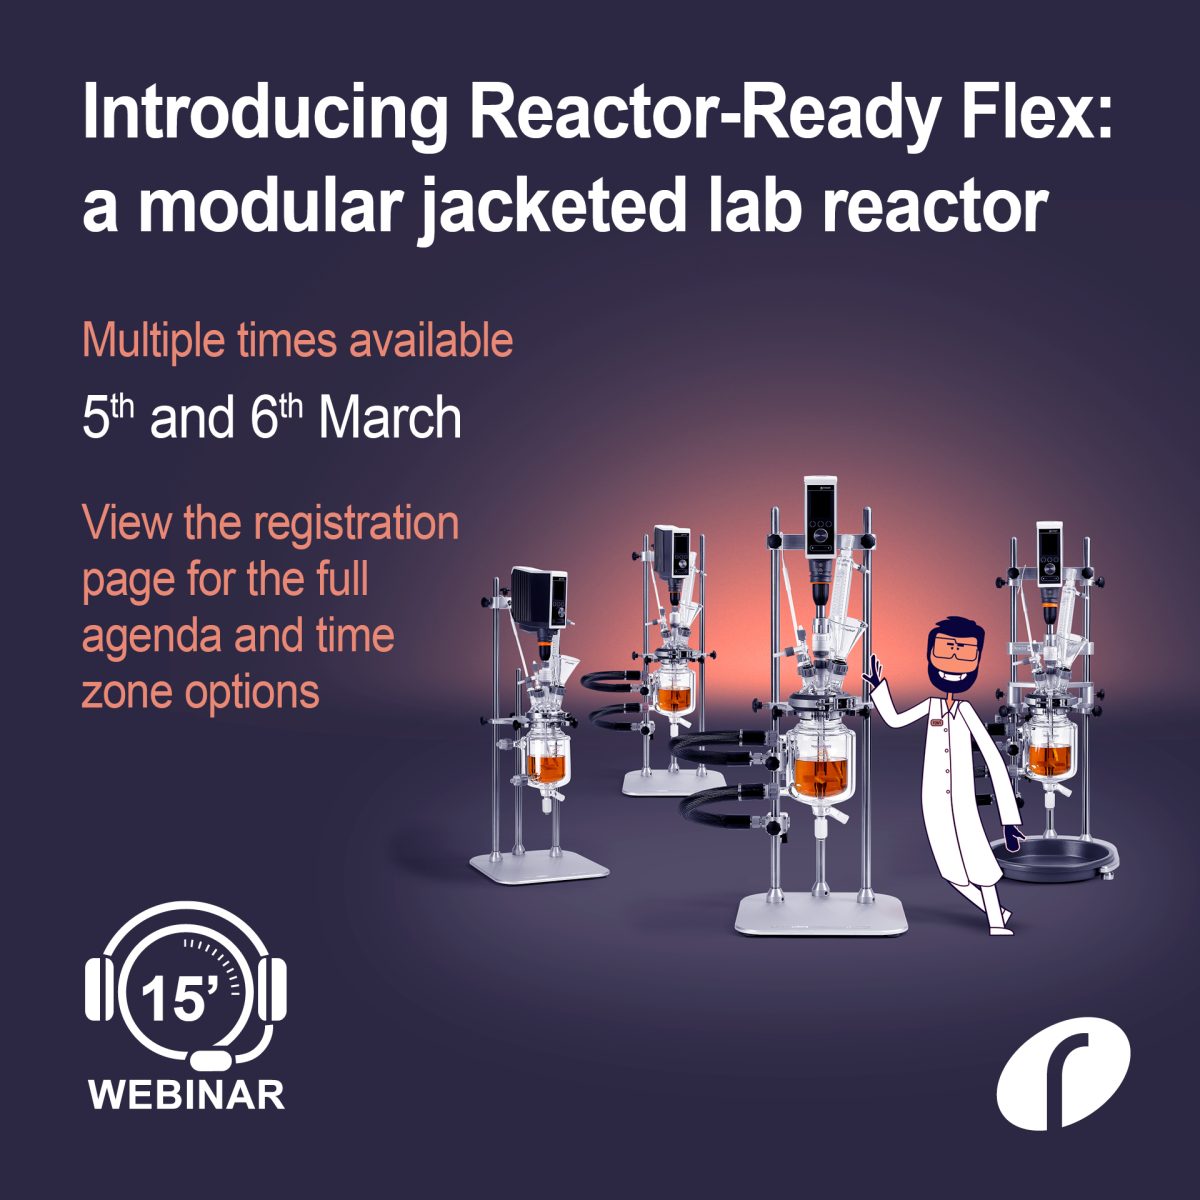 IGZ Instruments, Webinar – Der neue Reactor-Ready Flex von Radleys